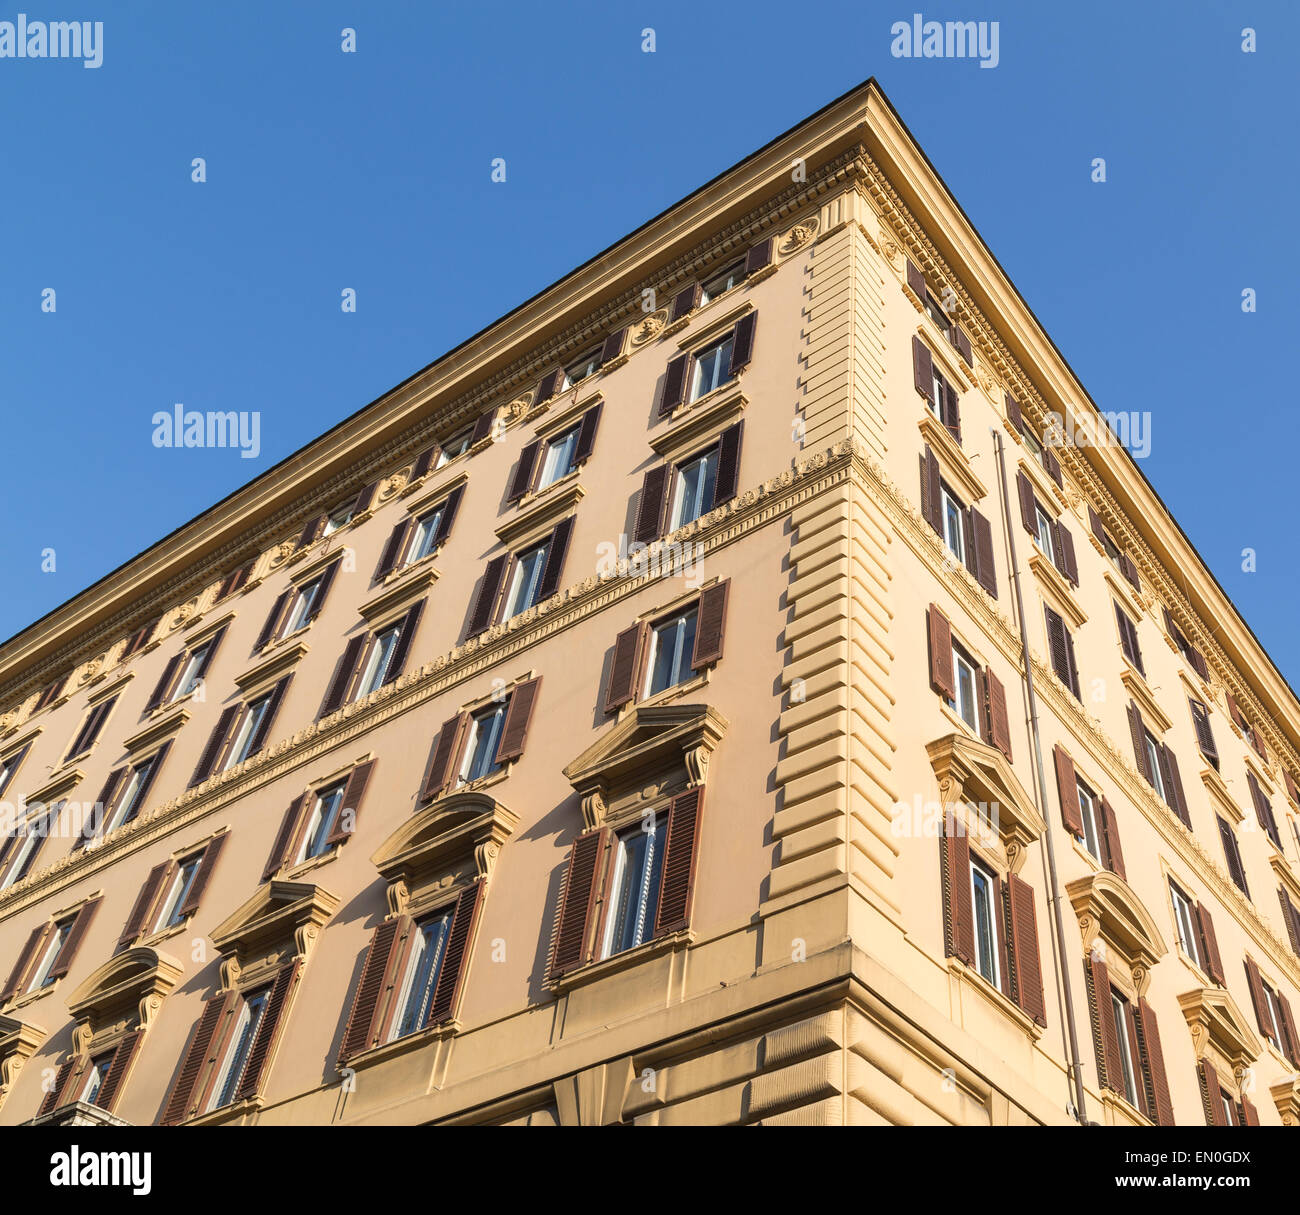 Typische Gestaltung von Gebäuden in Rom zeigt das Gebäude außen. Das Gebäude gezeigt hat eine Beige Farbe außen und Rollläden auf Stockfoto